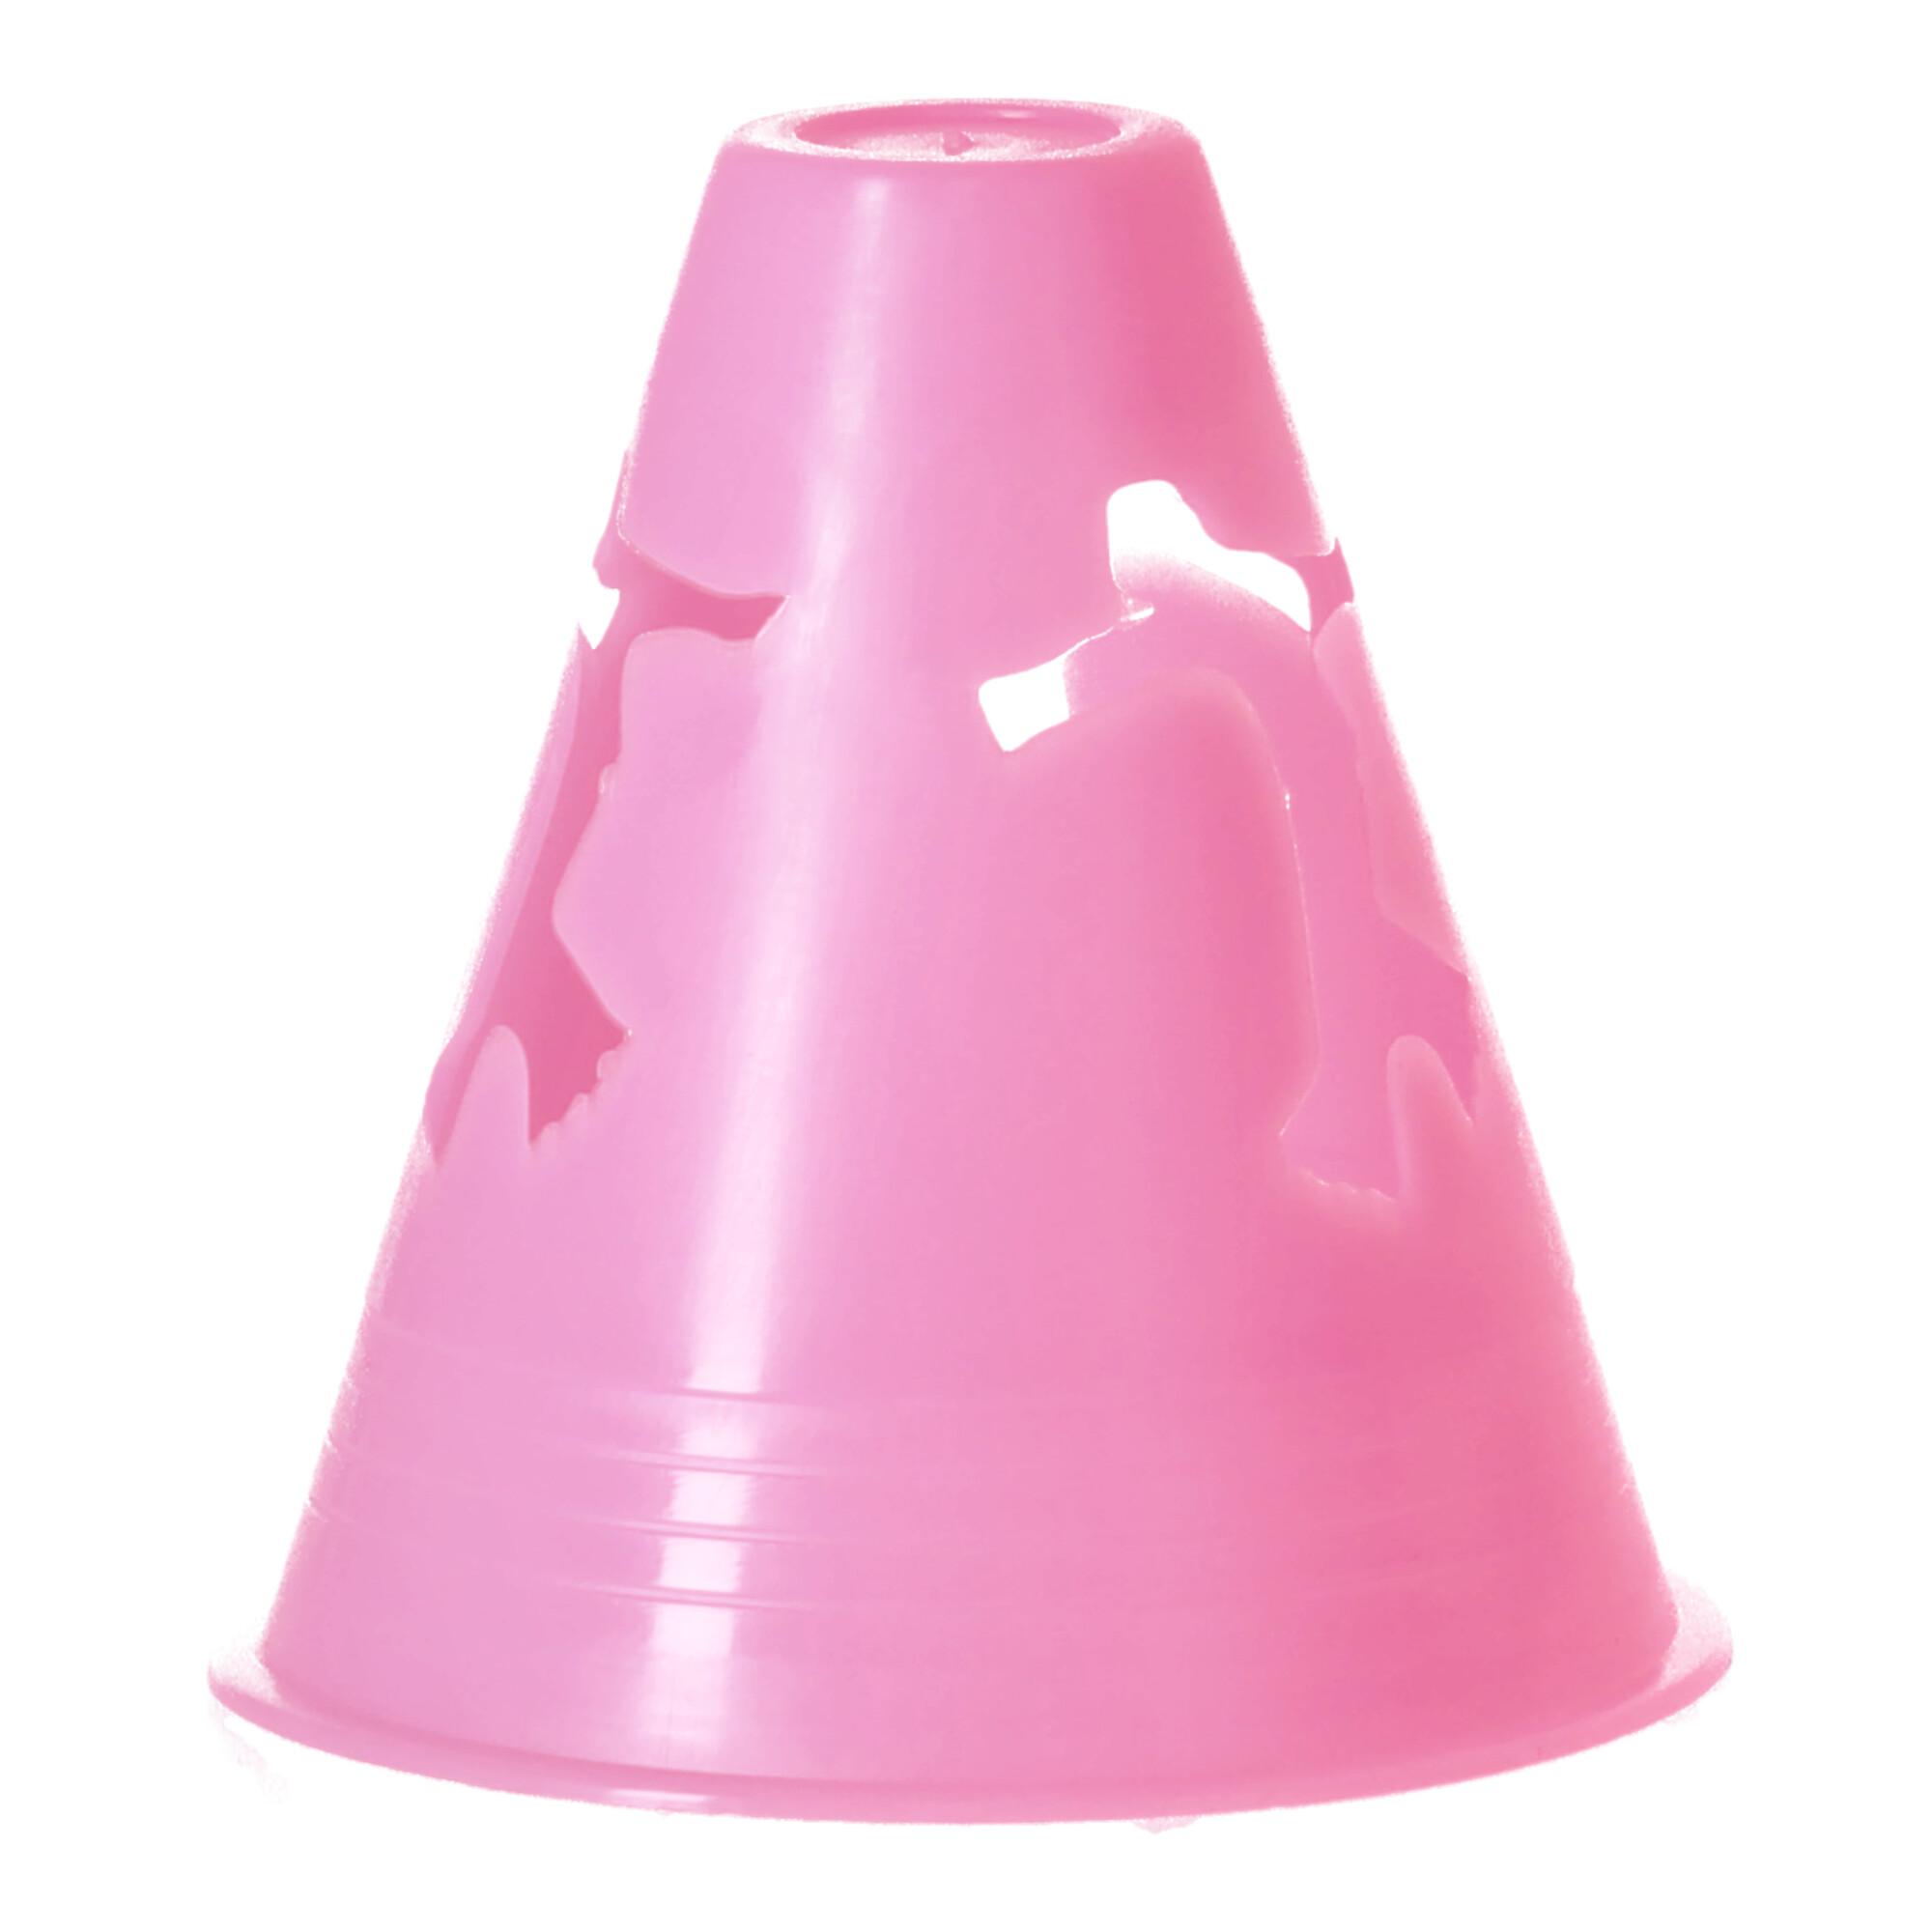 Slalom cones - pink